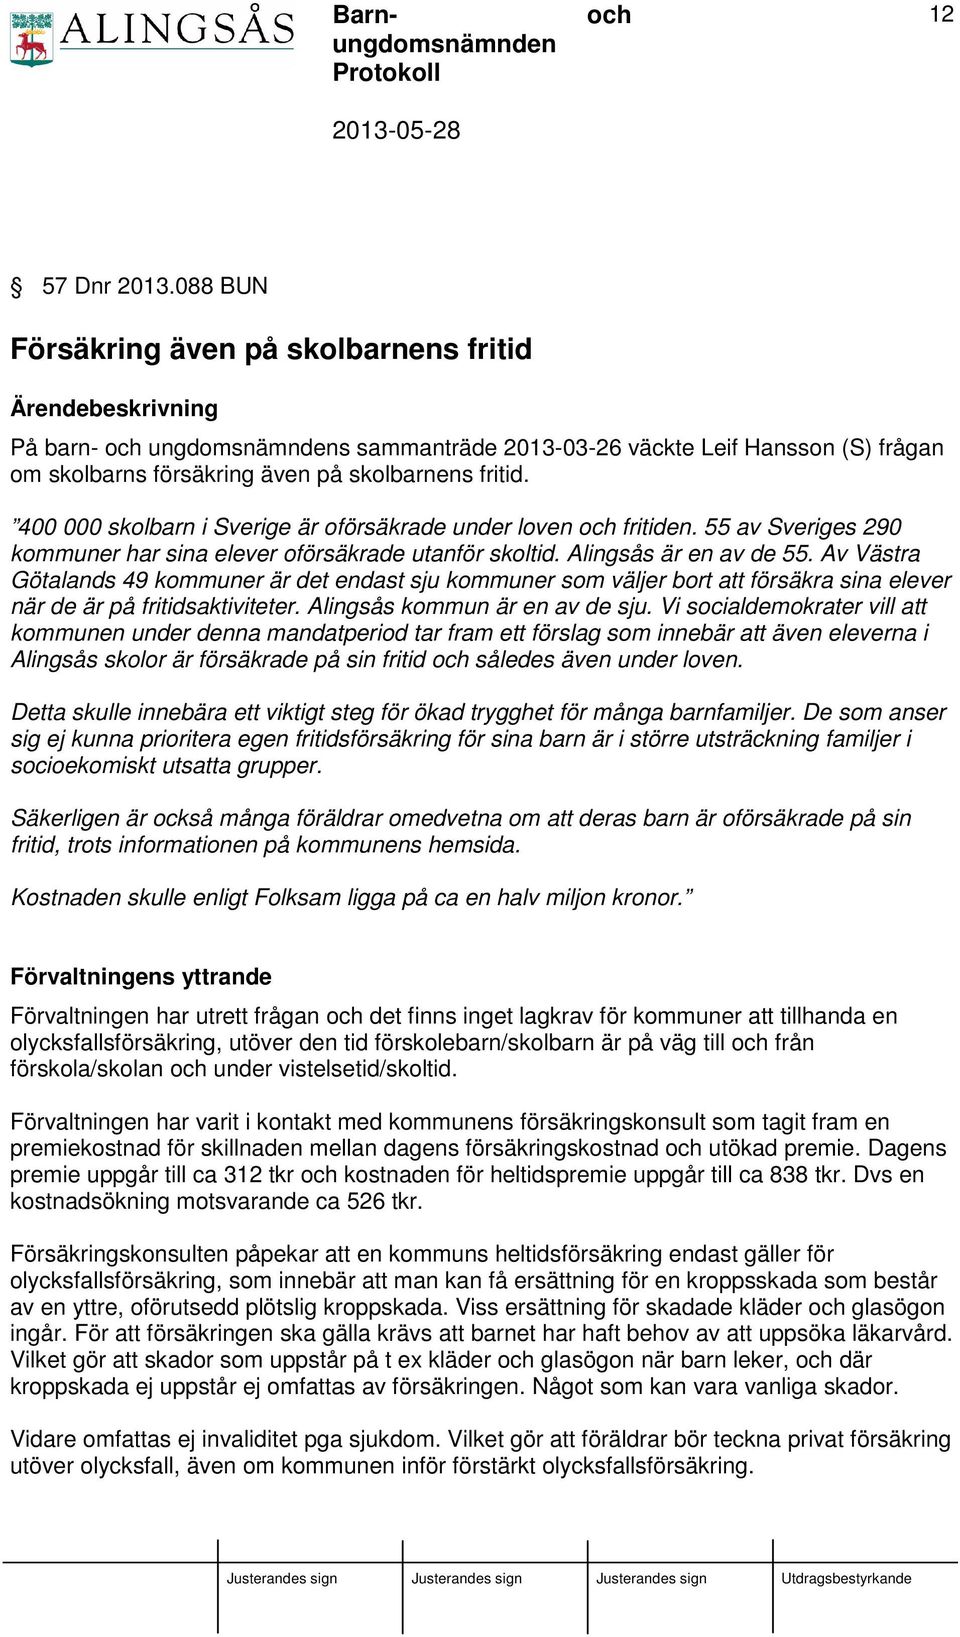 400 000 skolbarn i Sverige är oförsäkrade under loven fritiden. 55 av Sveriges 290 kommuner har sina elever oförsäkrade utanför skoltid. Alingsås är en av de 55.